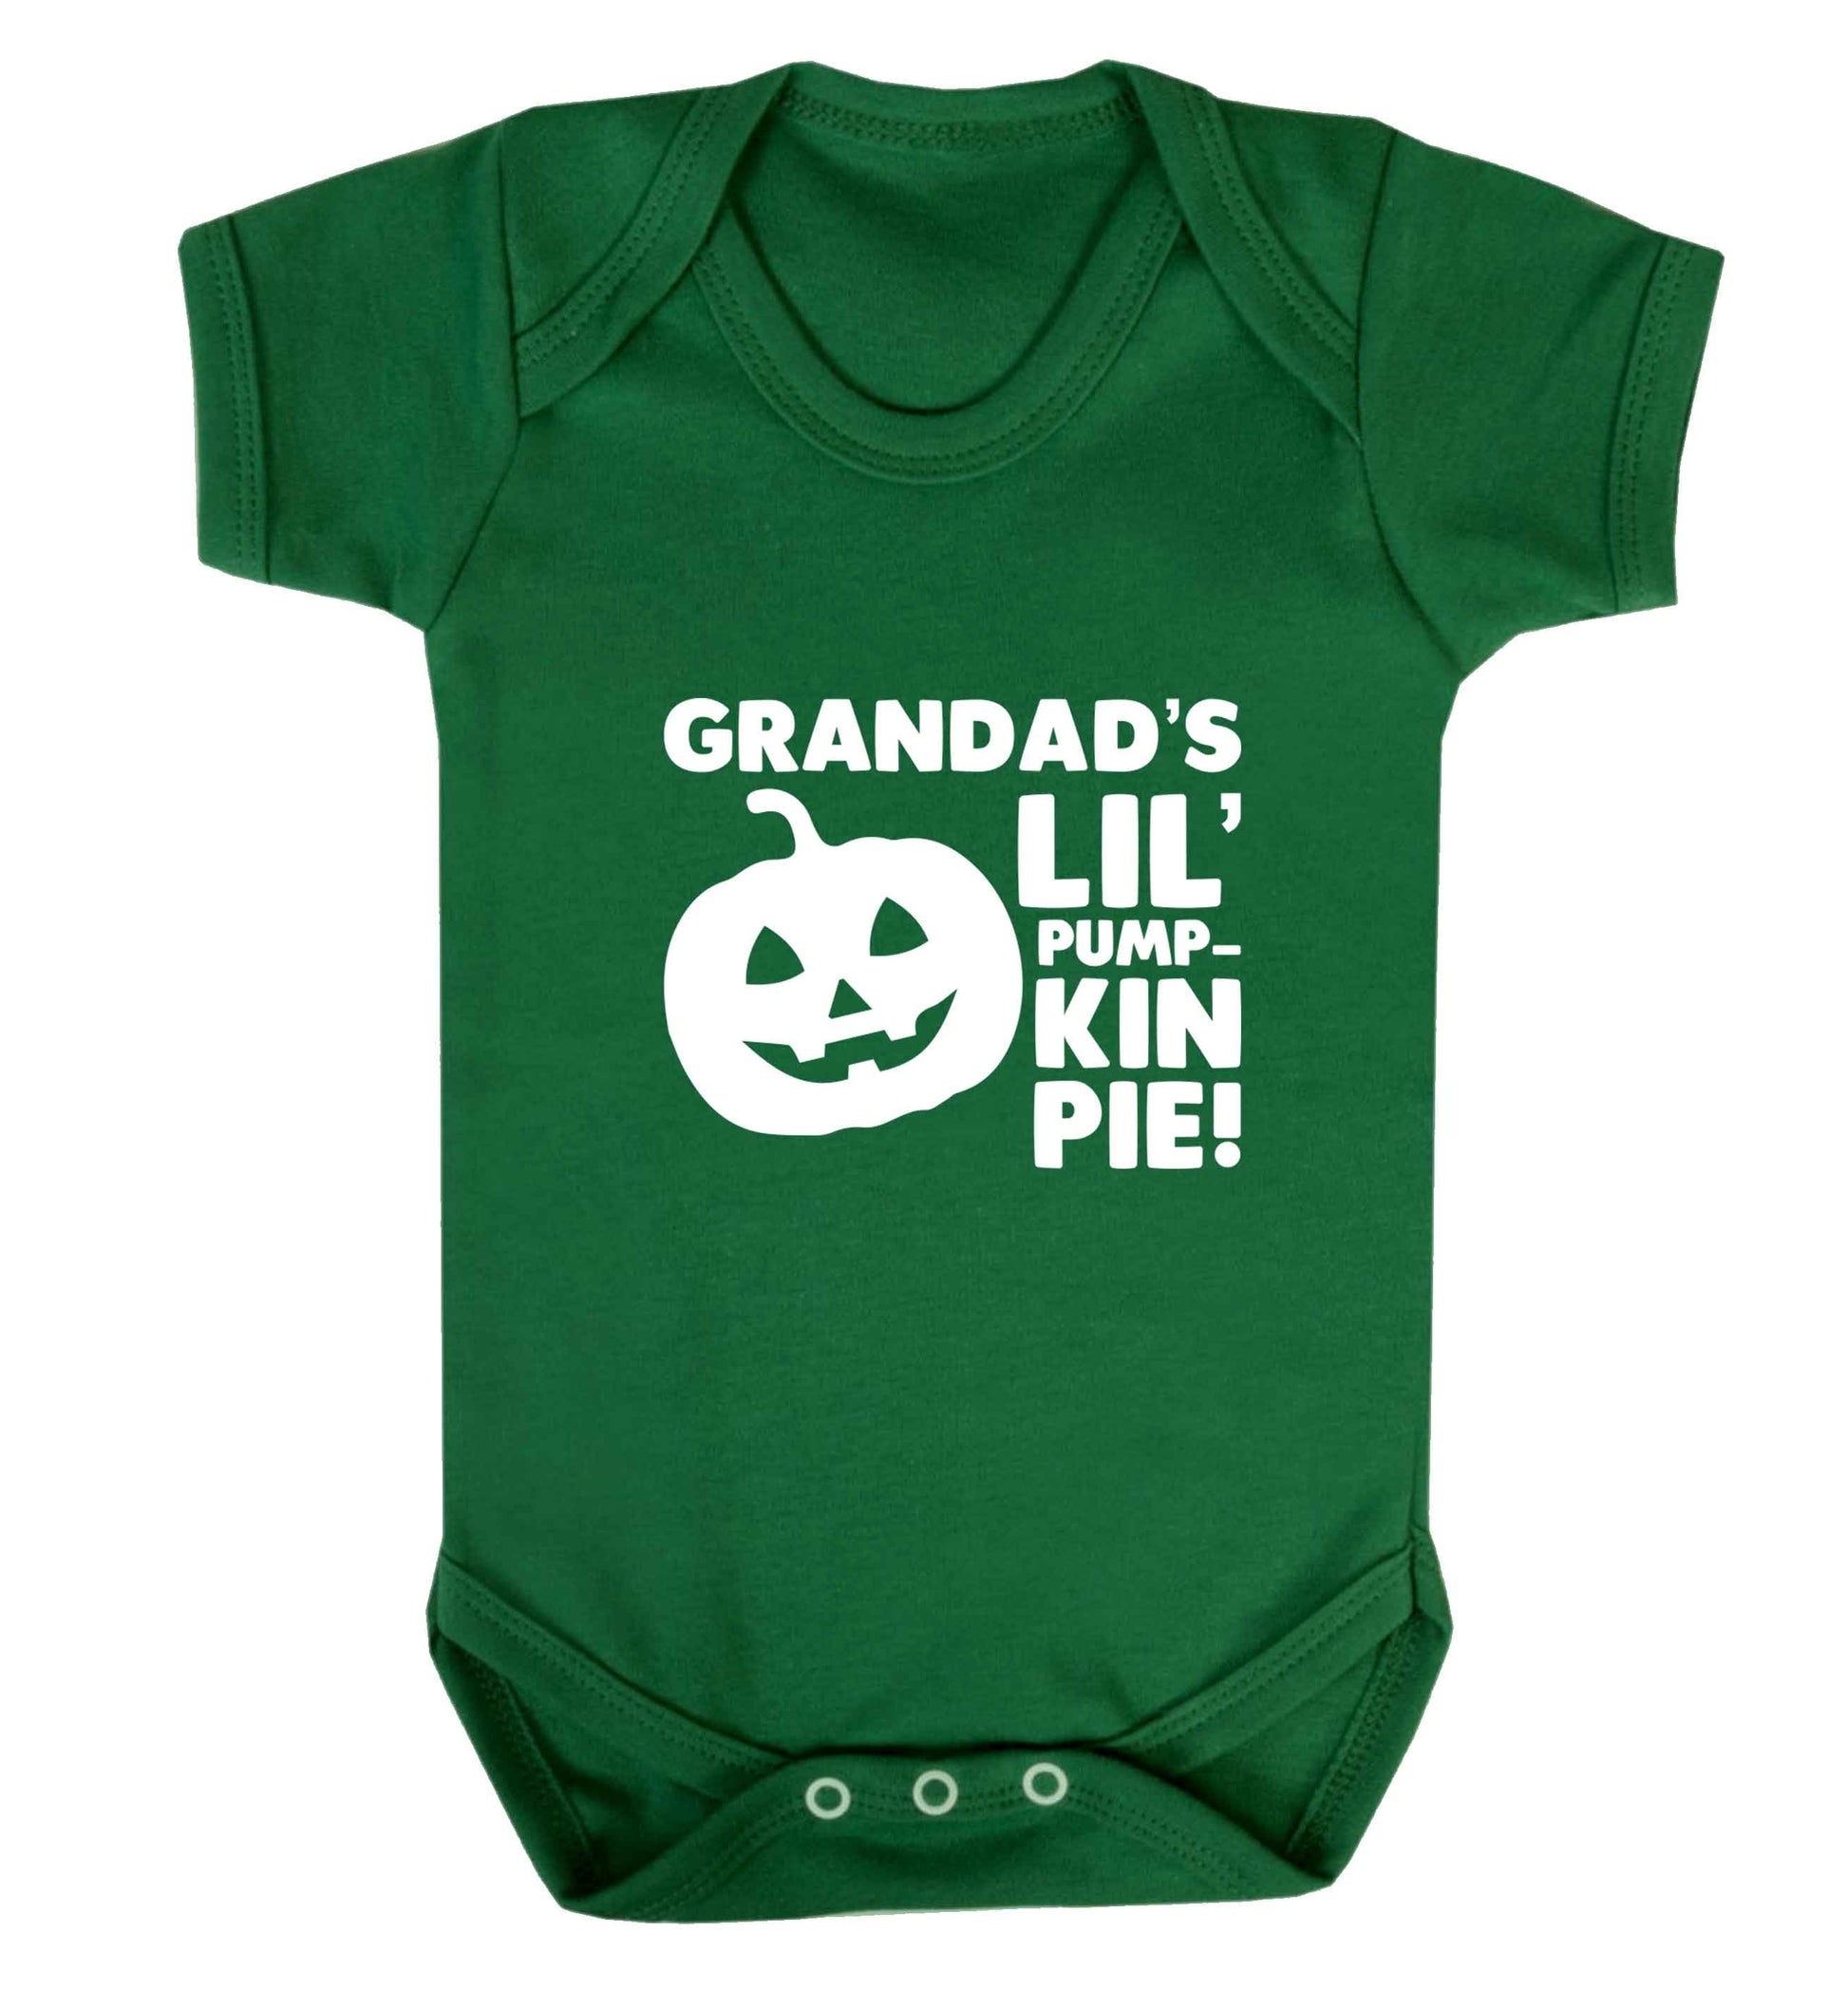 Grandad's lil' pumpkin pie baby vest green 18-24 months